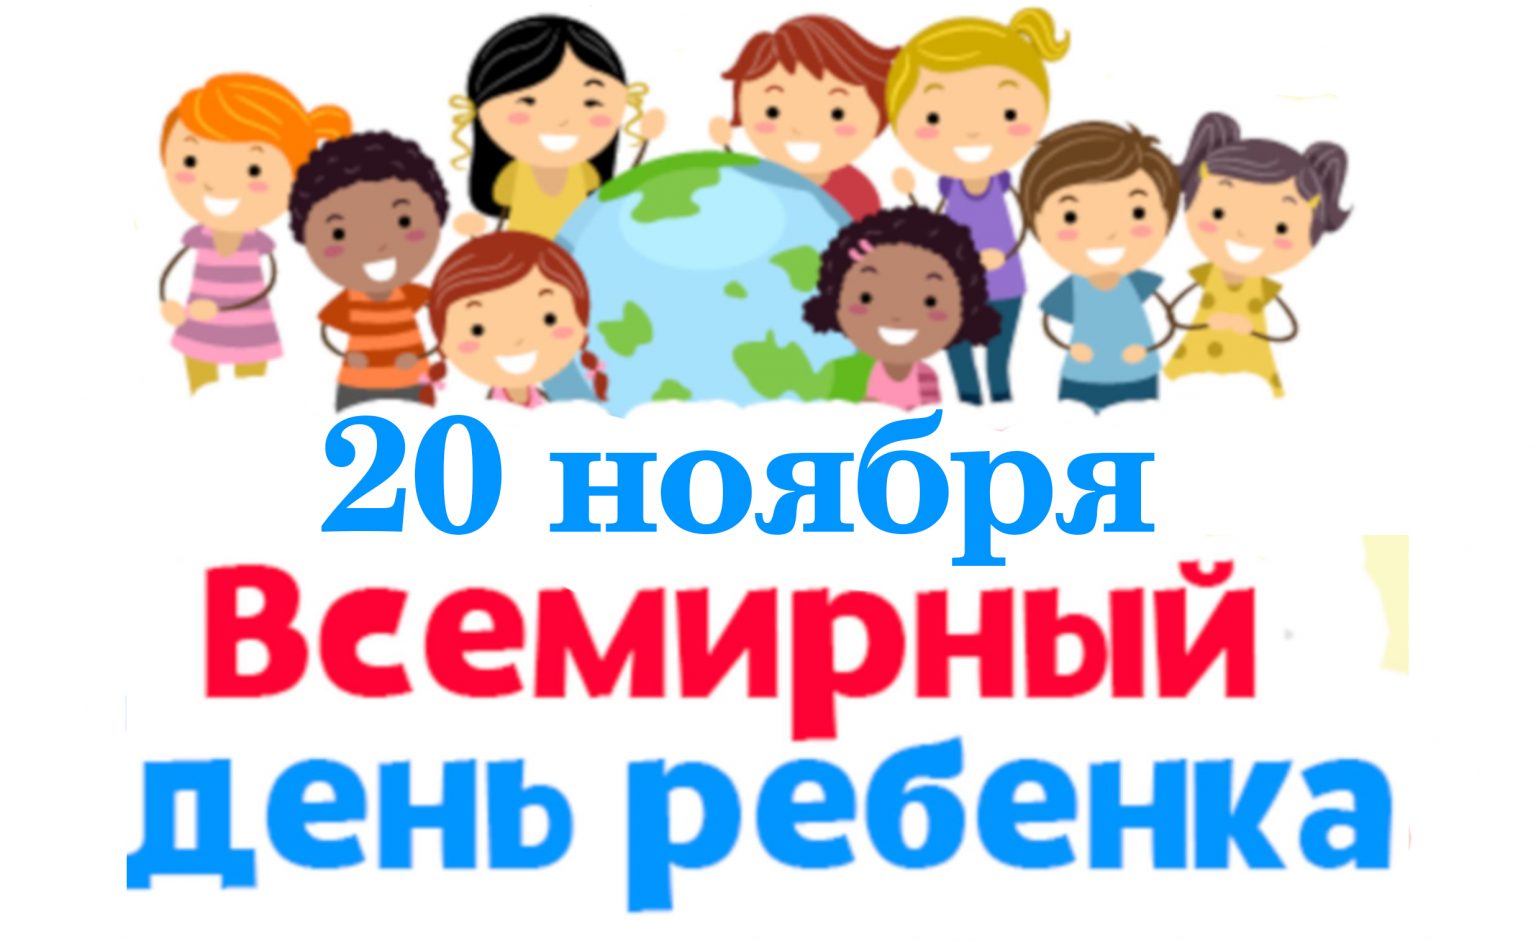 20 Ноября Всемирный день ребенка